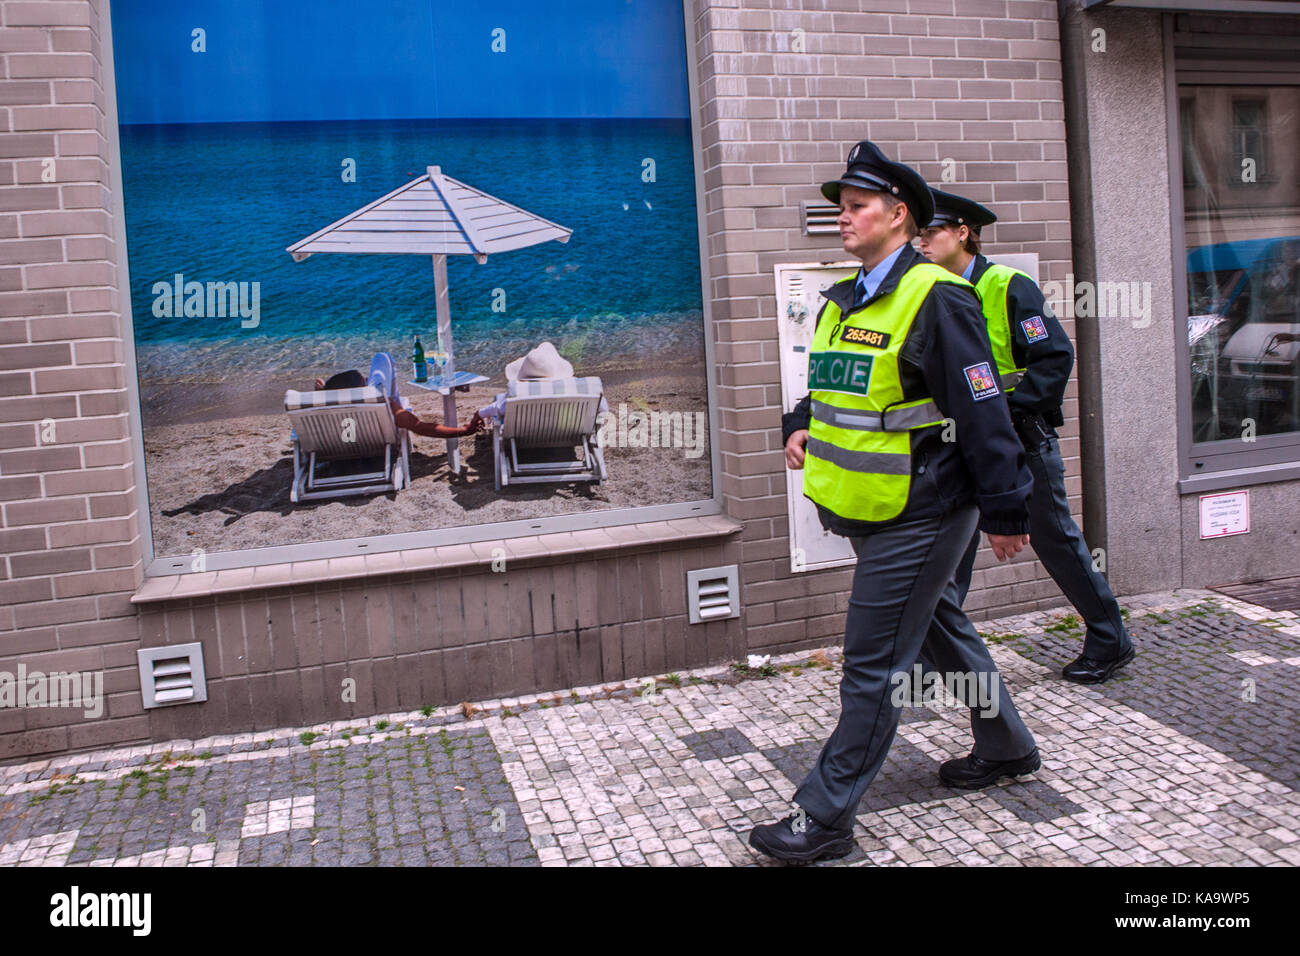 La polizia ceca pattuglia la strada, passa davanti a un poster per una vacanza fantastica in una vetrina di un negozio Praga Repubblica Ceca Foto Stock